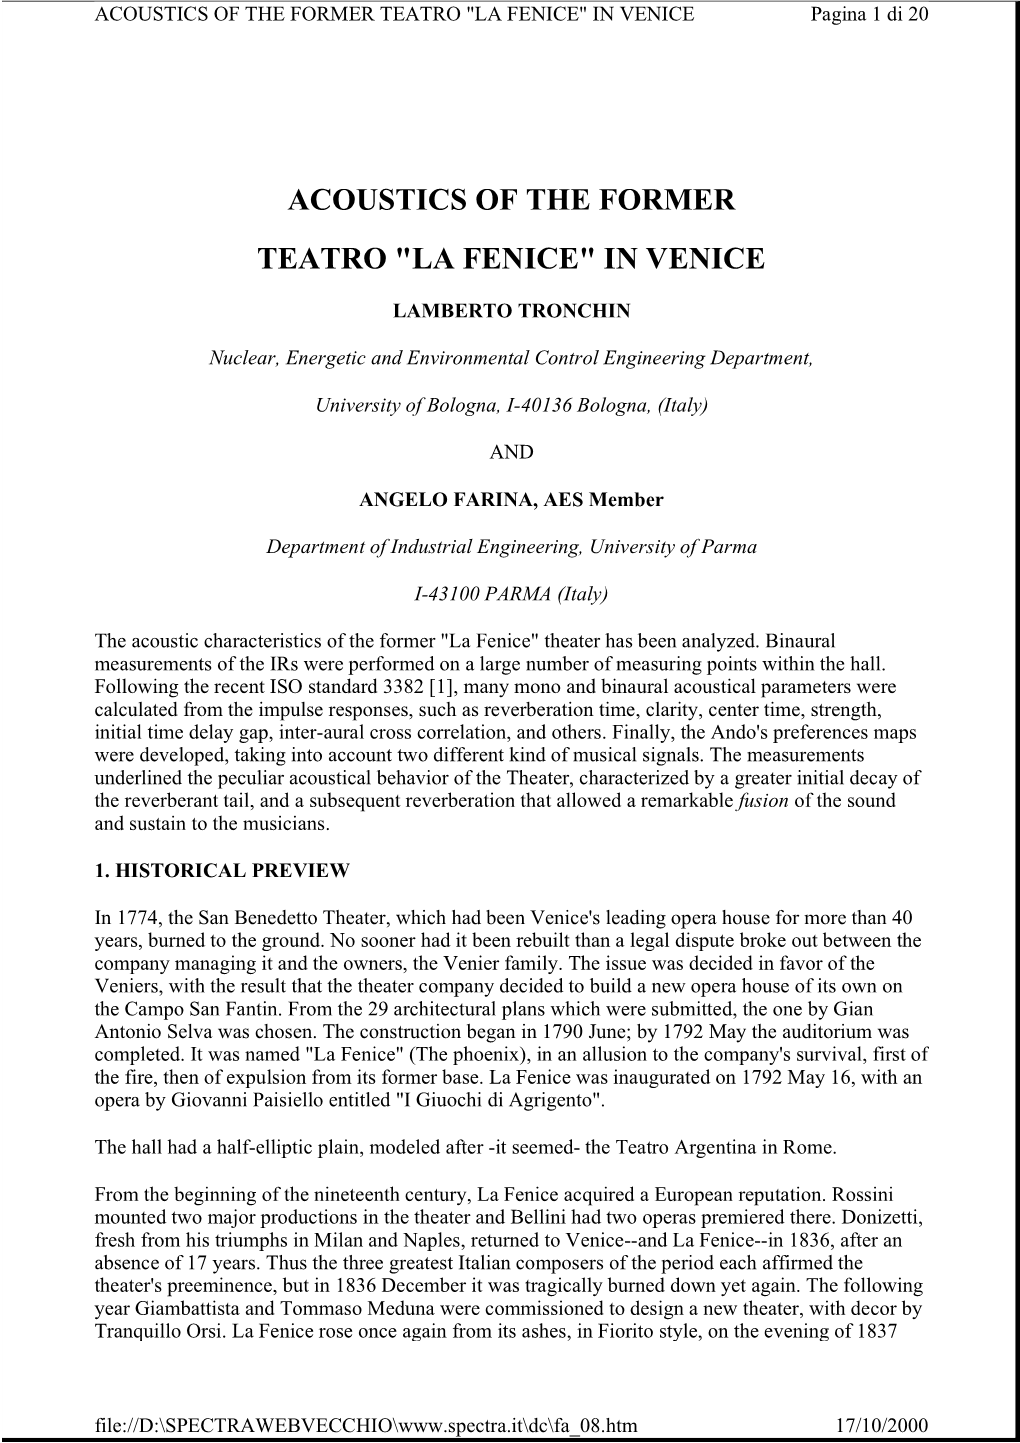 ACOUSTICS of the FORMER TEATRO "LA FENICE" in VENICE Pagina 1 Di 20